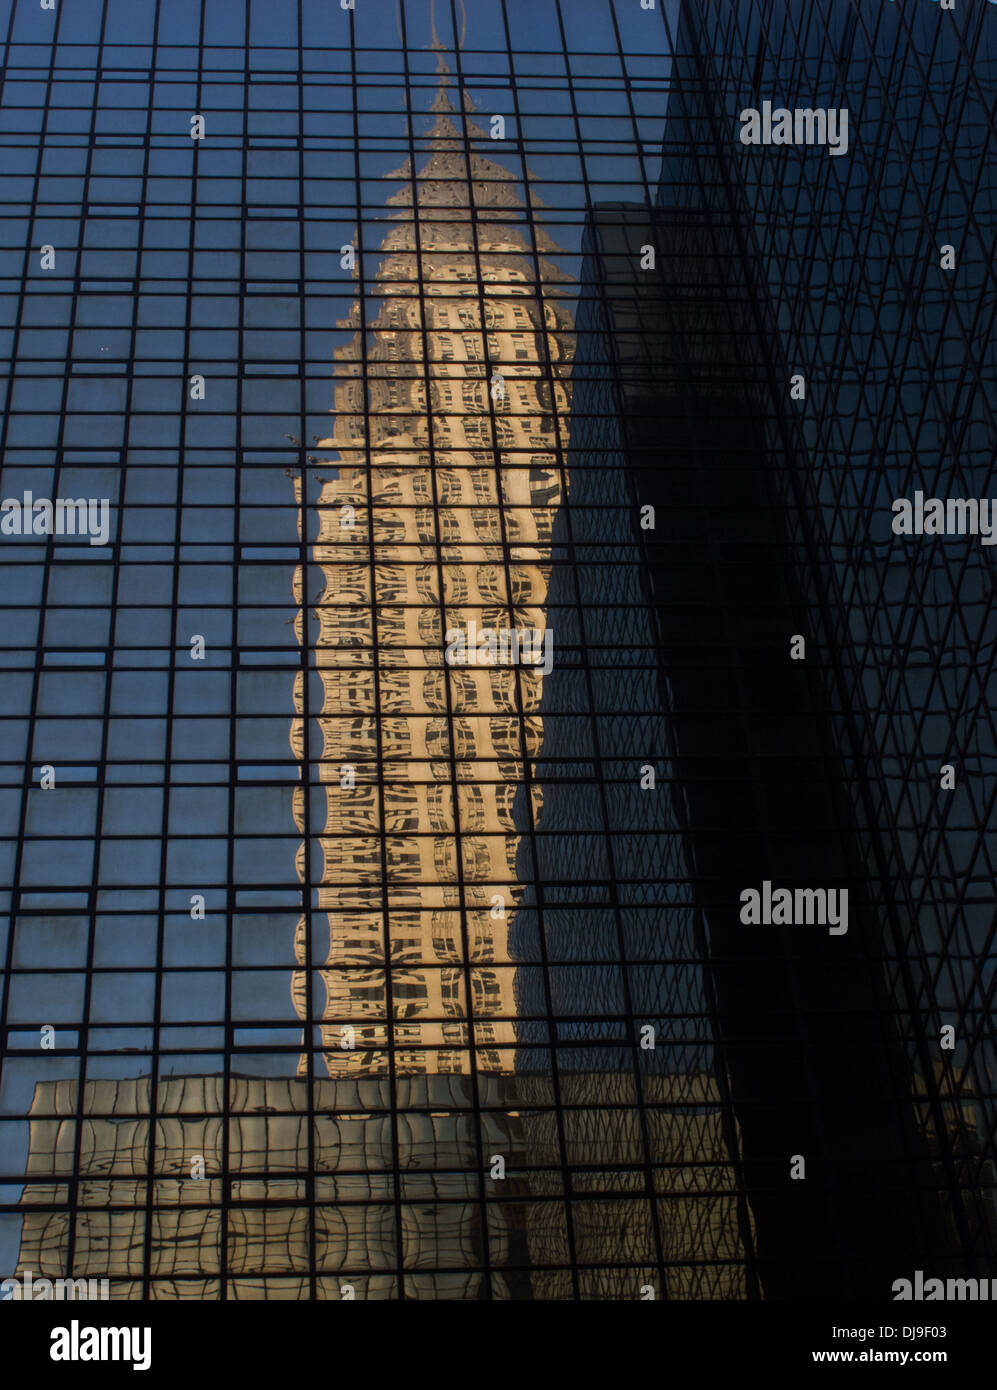 Glasfassade mit Reflexion des Chrysler building, Manhattan, New York, USA. Stockfoto